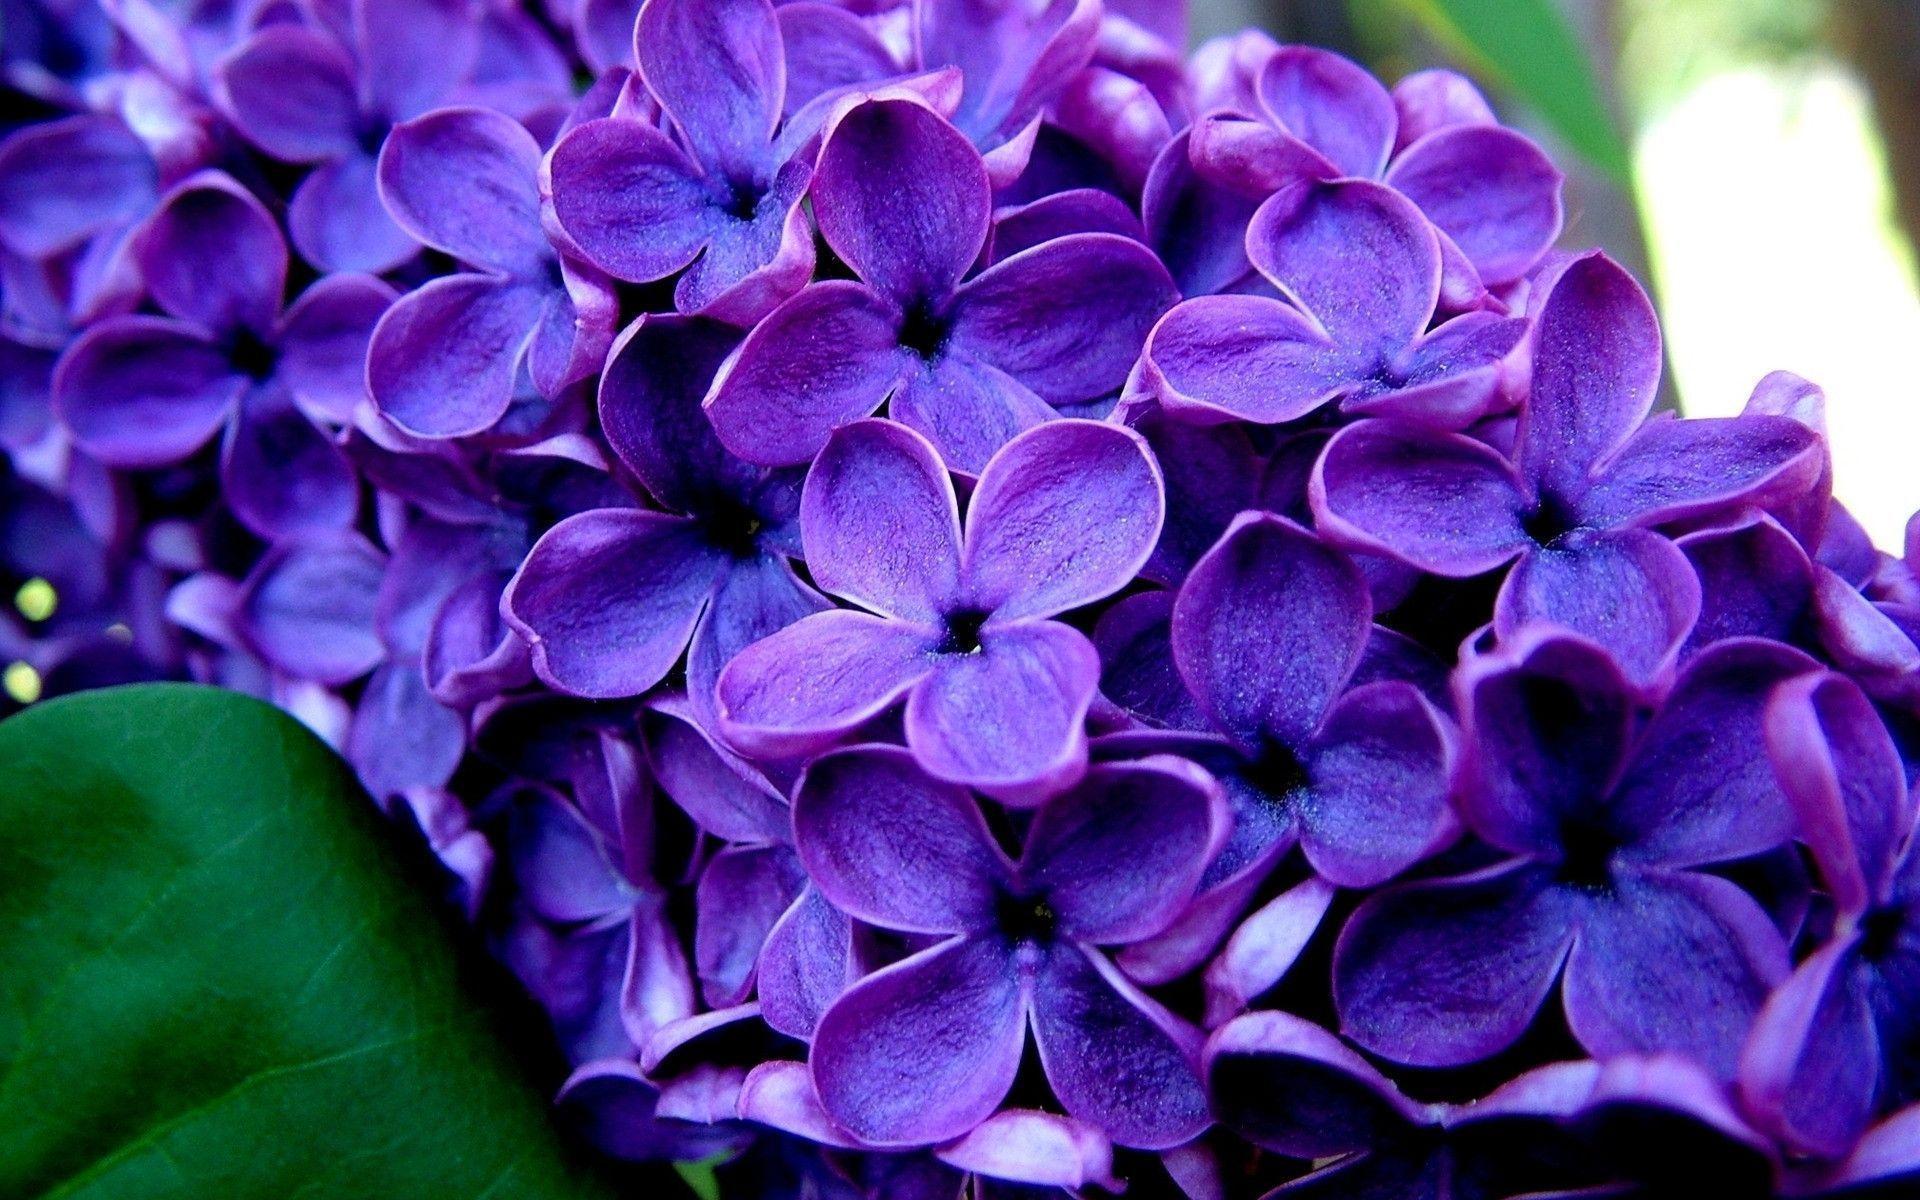 Wallpaper For > Lavender Flower Wallpaper For Desktop